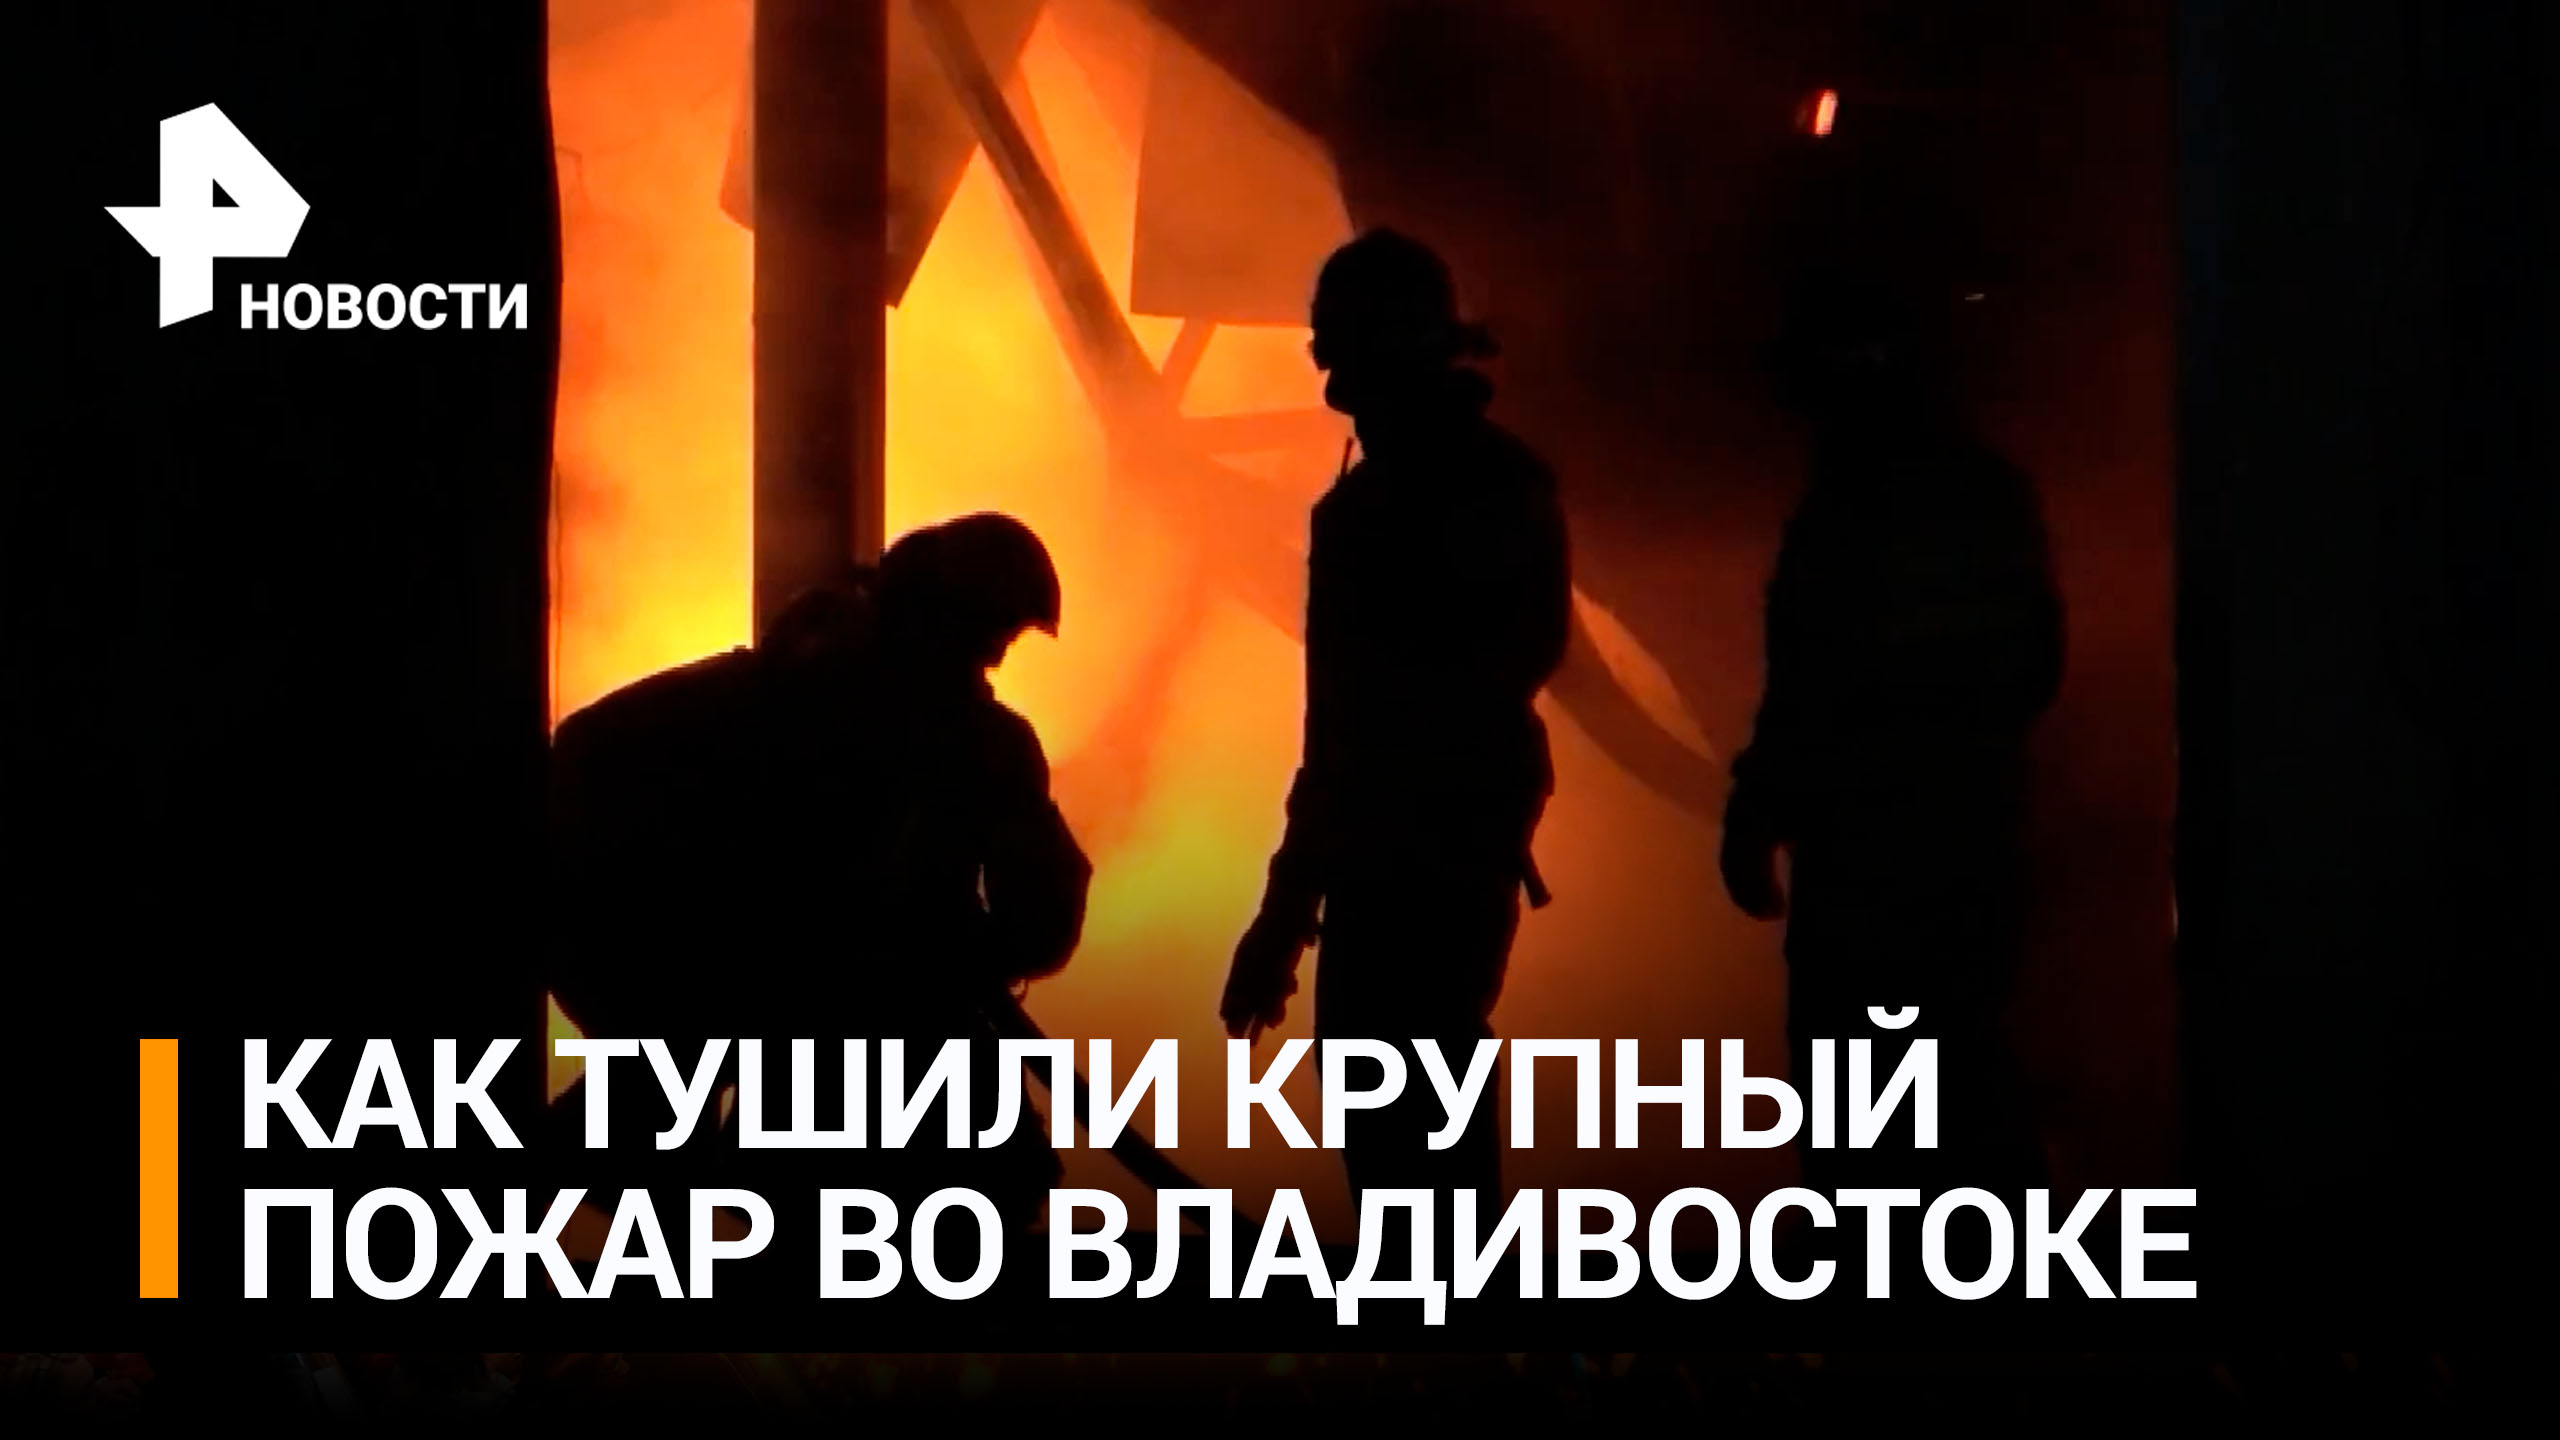 "Зарево на все небо", – очевидцы рассказали о пожаре во Владивостоке / РЕН Новости